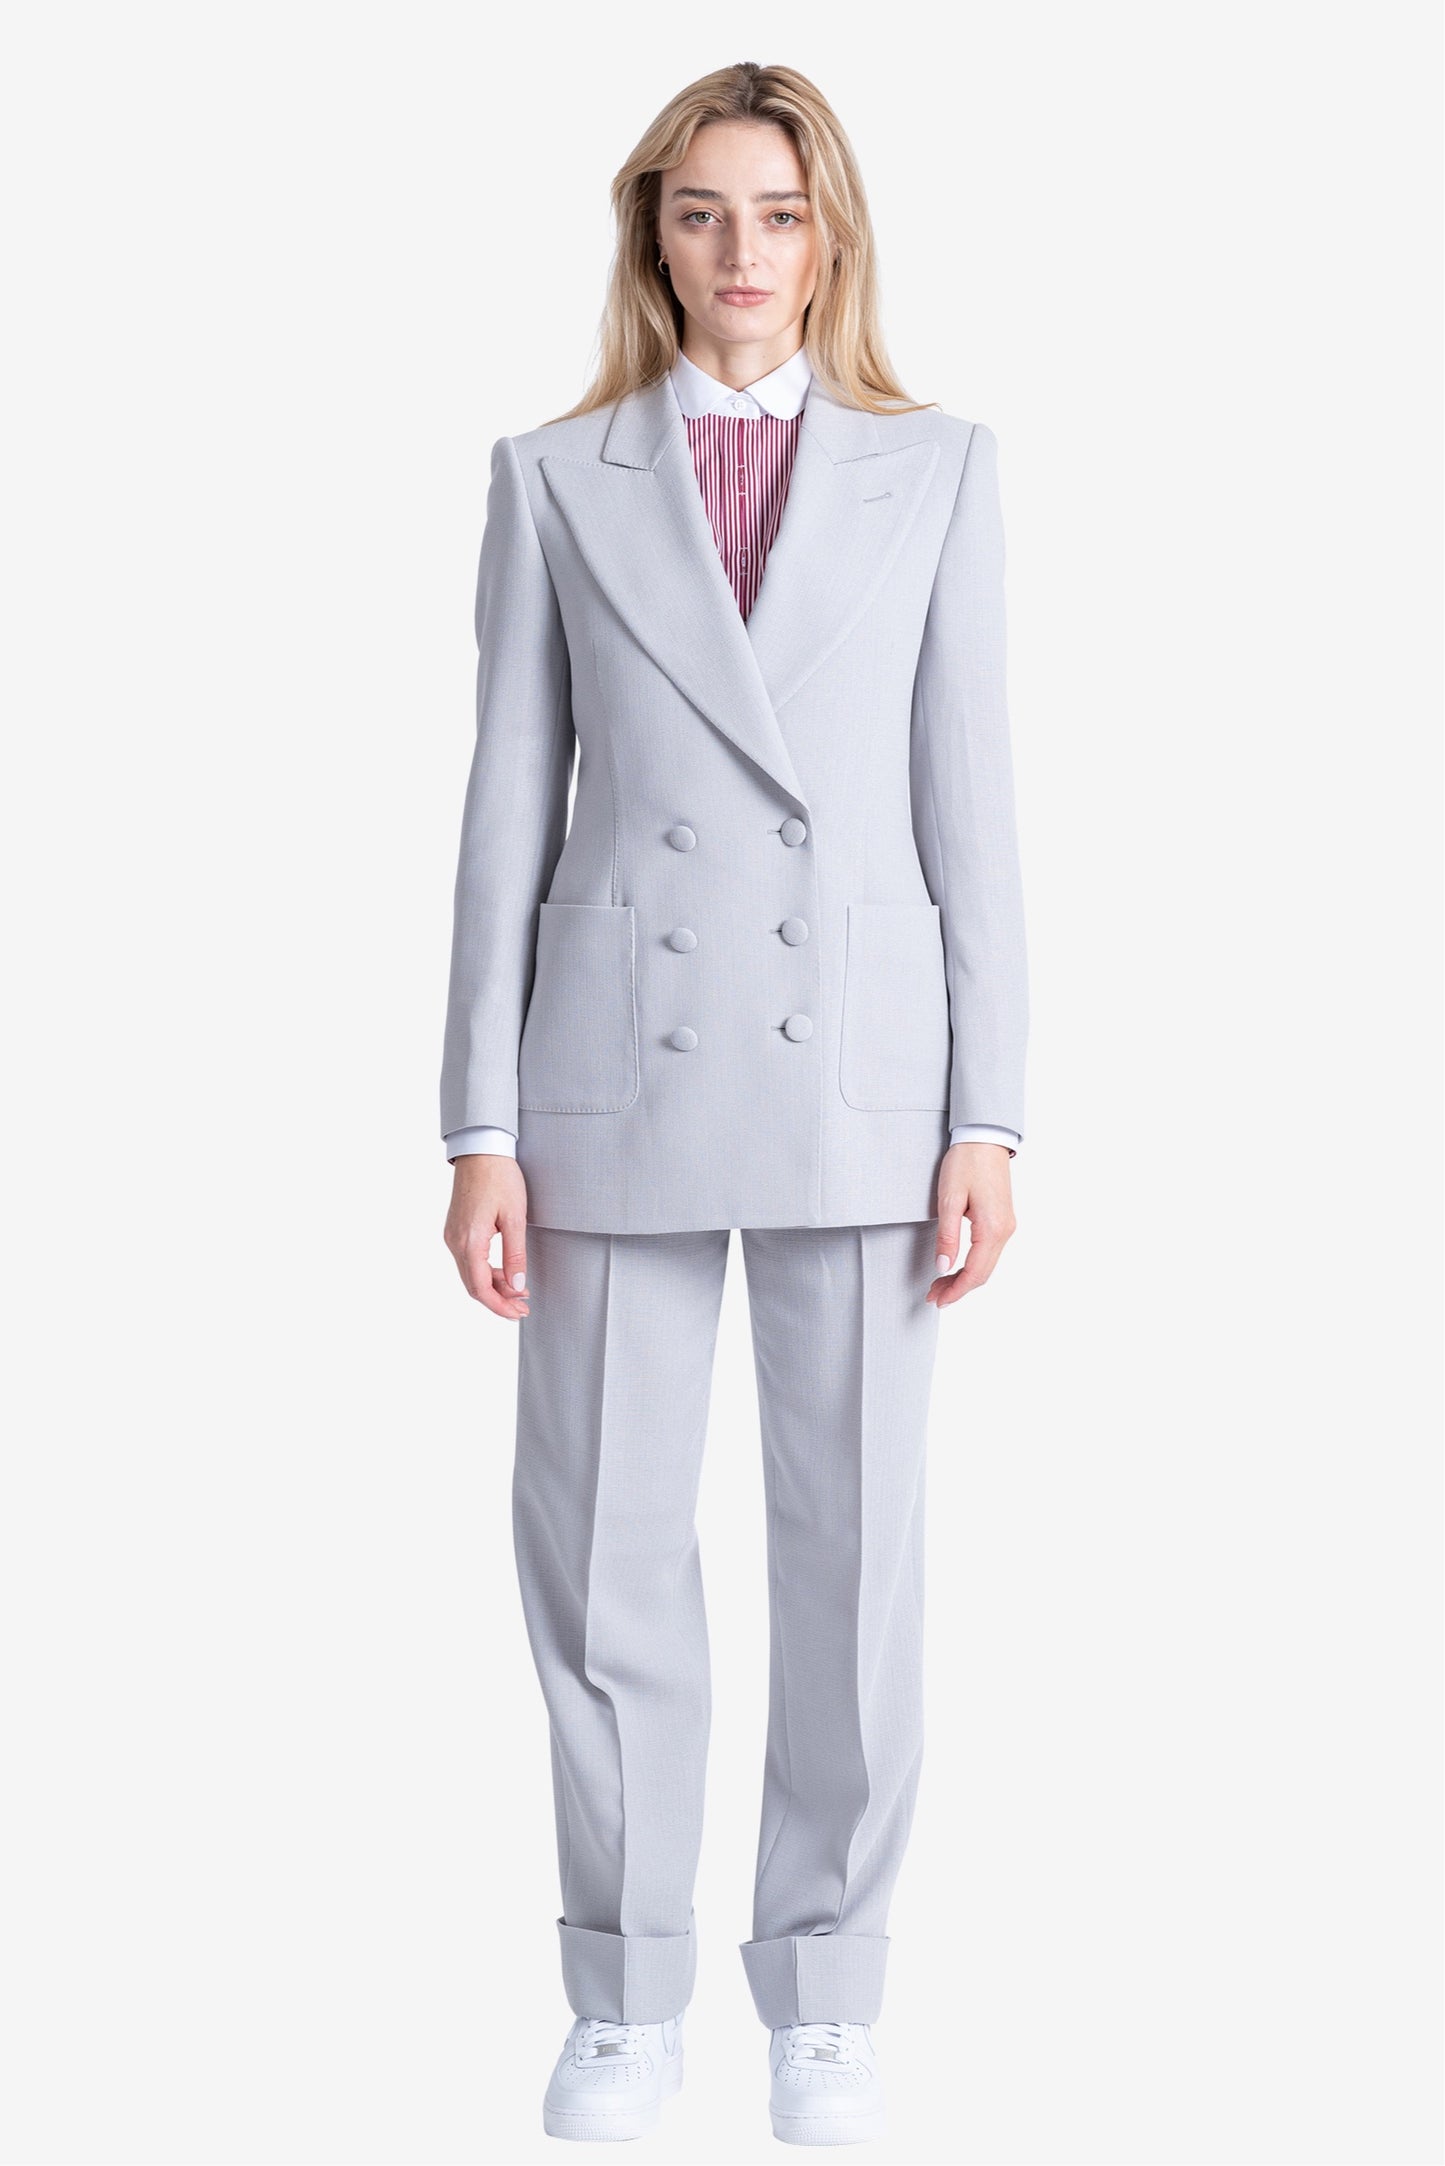 Alexander Grain Gray Suit